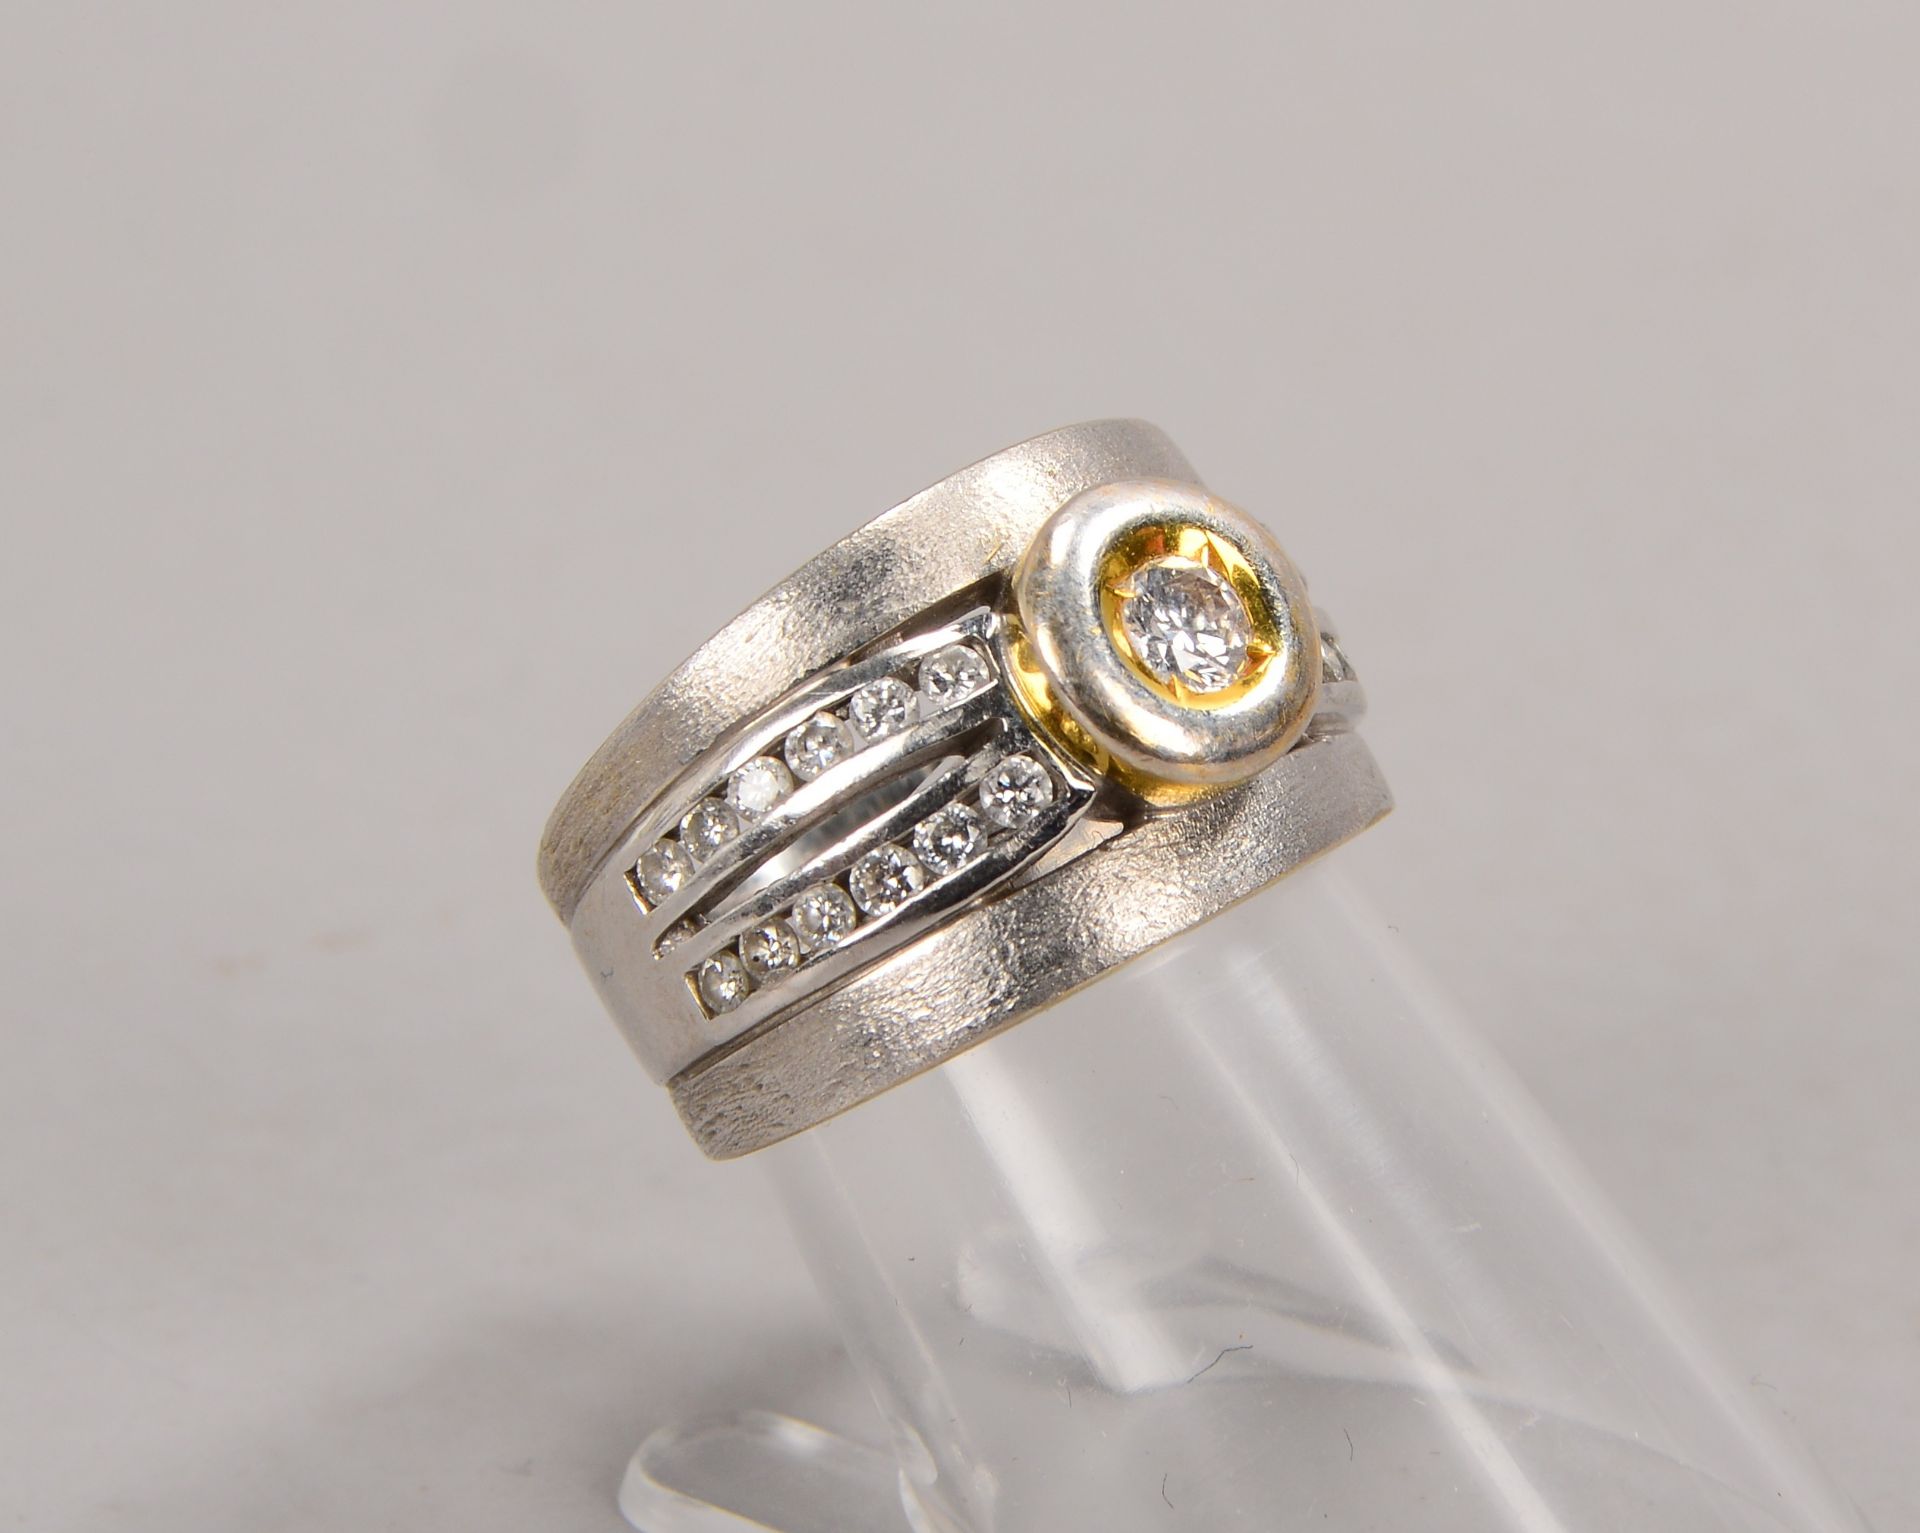 Ring, 585 WG/GG (gestempelt), mit 25-fachem Brillantbesatz/zusammen ca. 0,55 ct; RG 53, Gewicht 10 g - Bild 2 aus 2